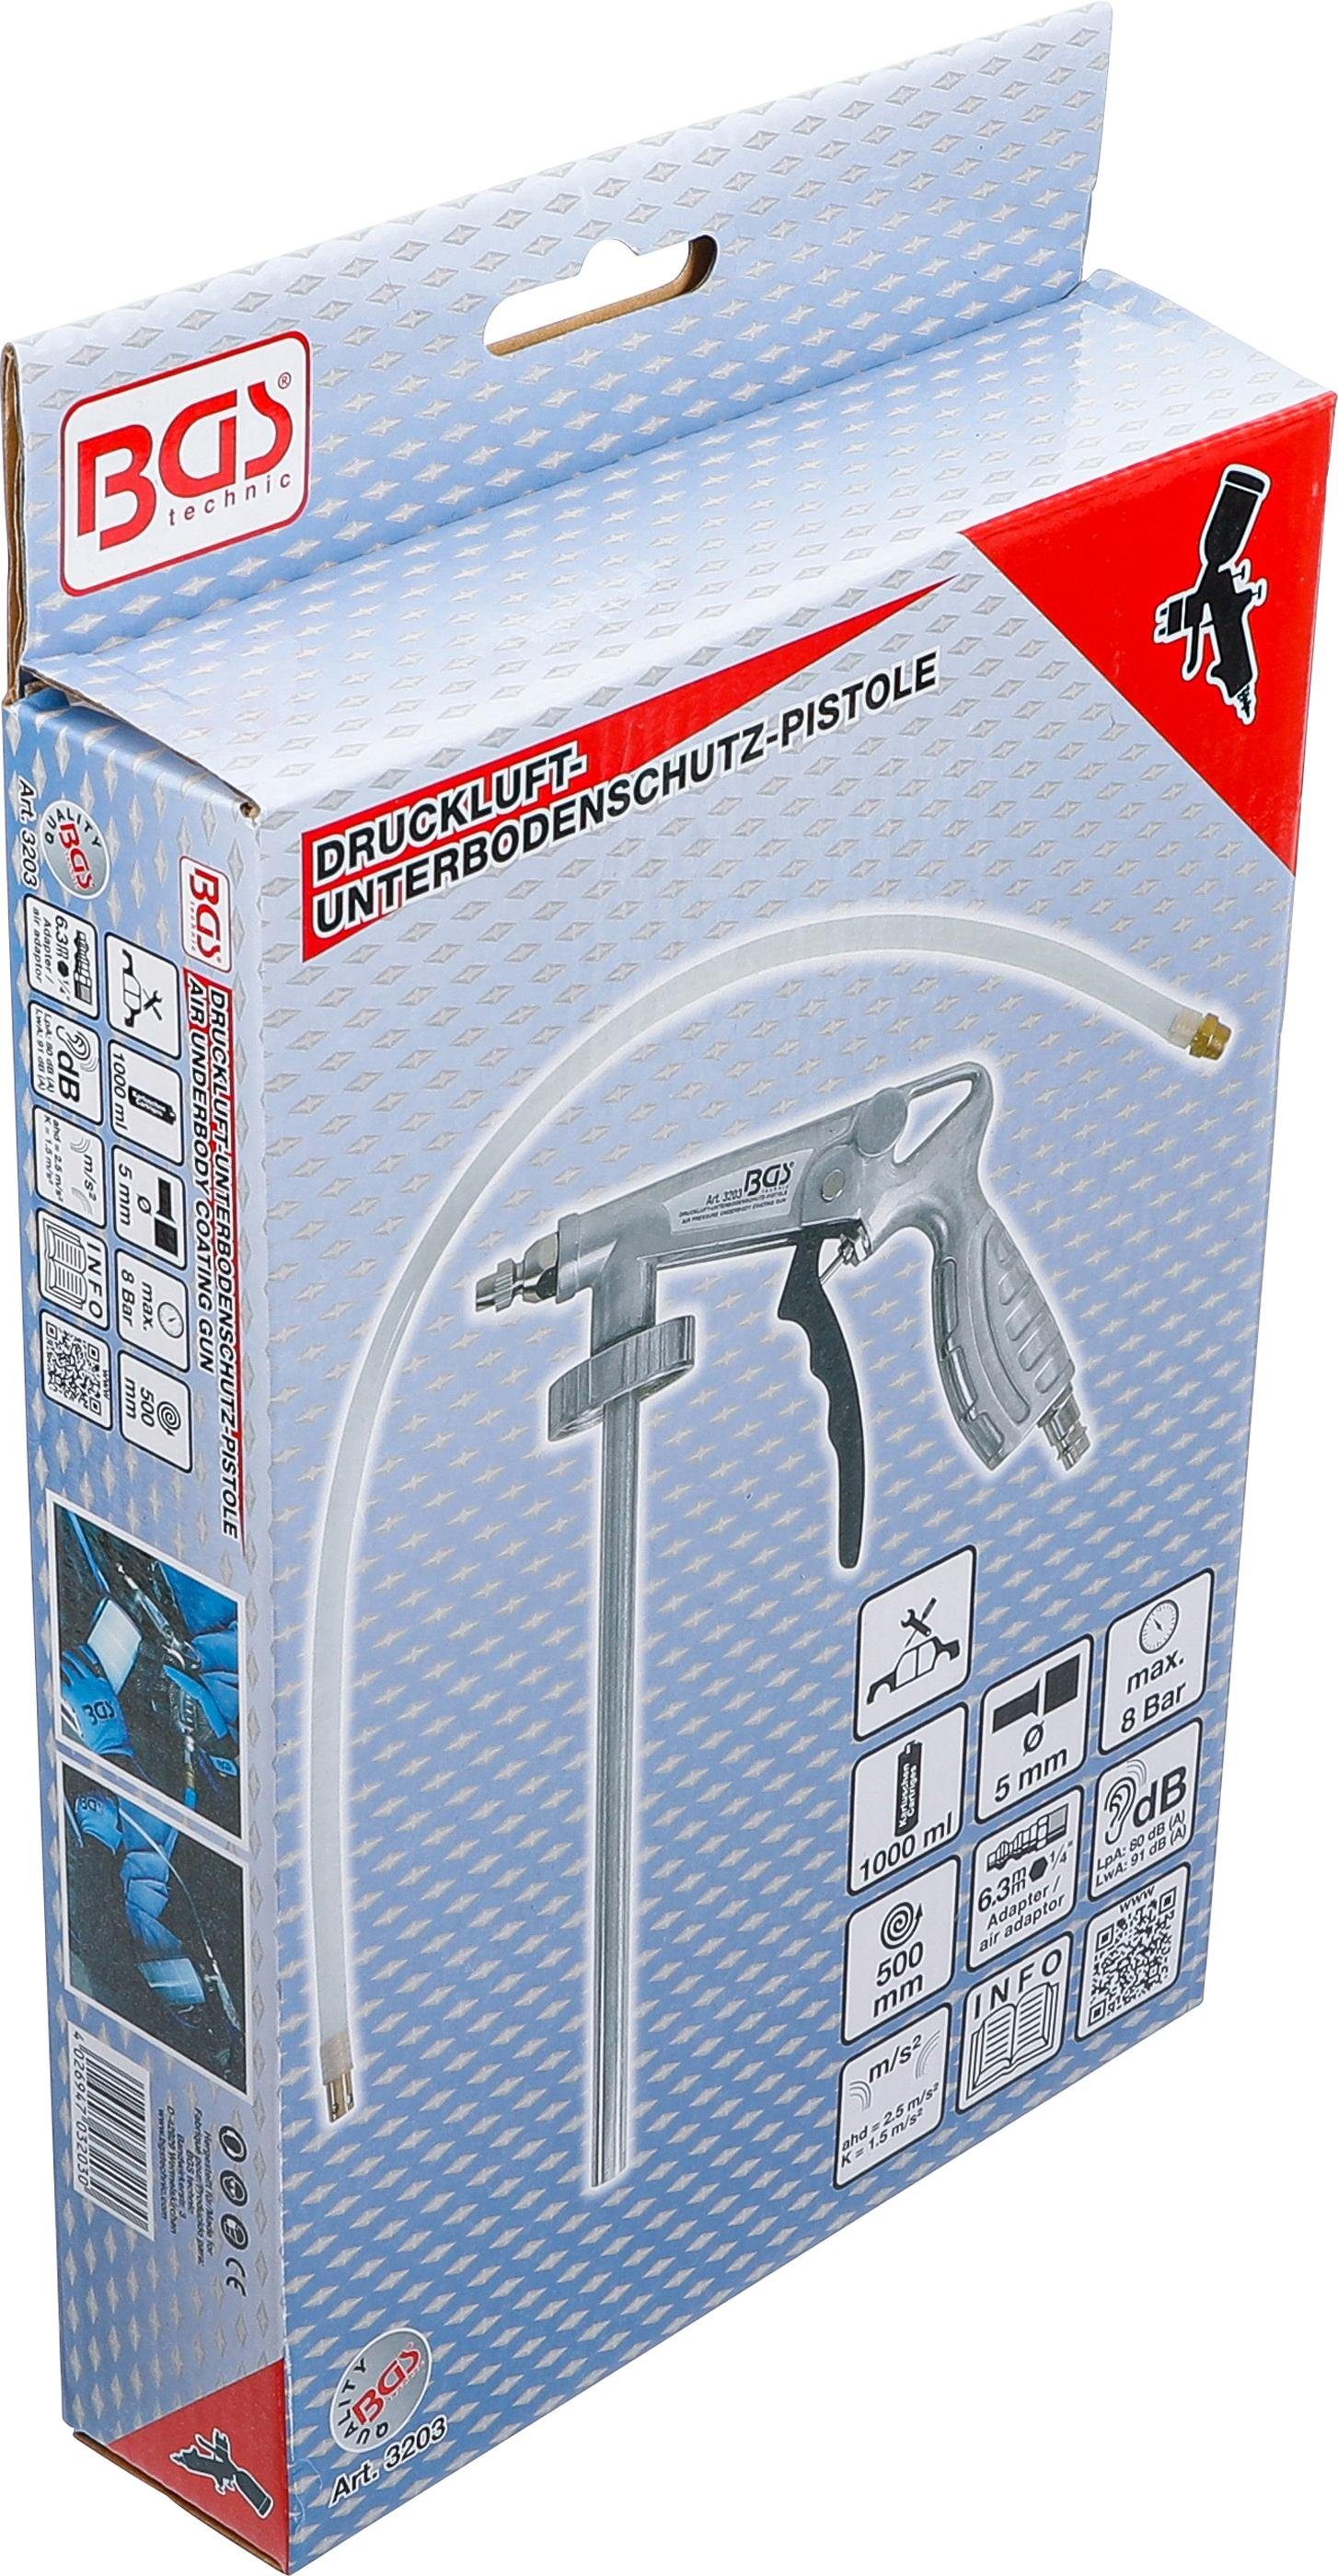 BGS Druckluft-Unterbodenschutz-Pistole Farbsprühpistole technic